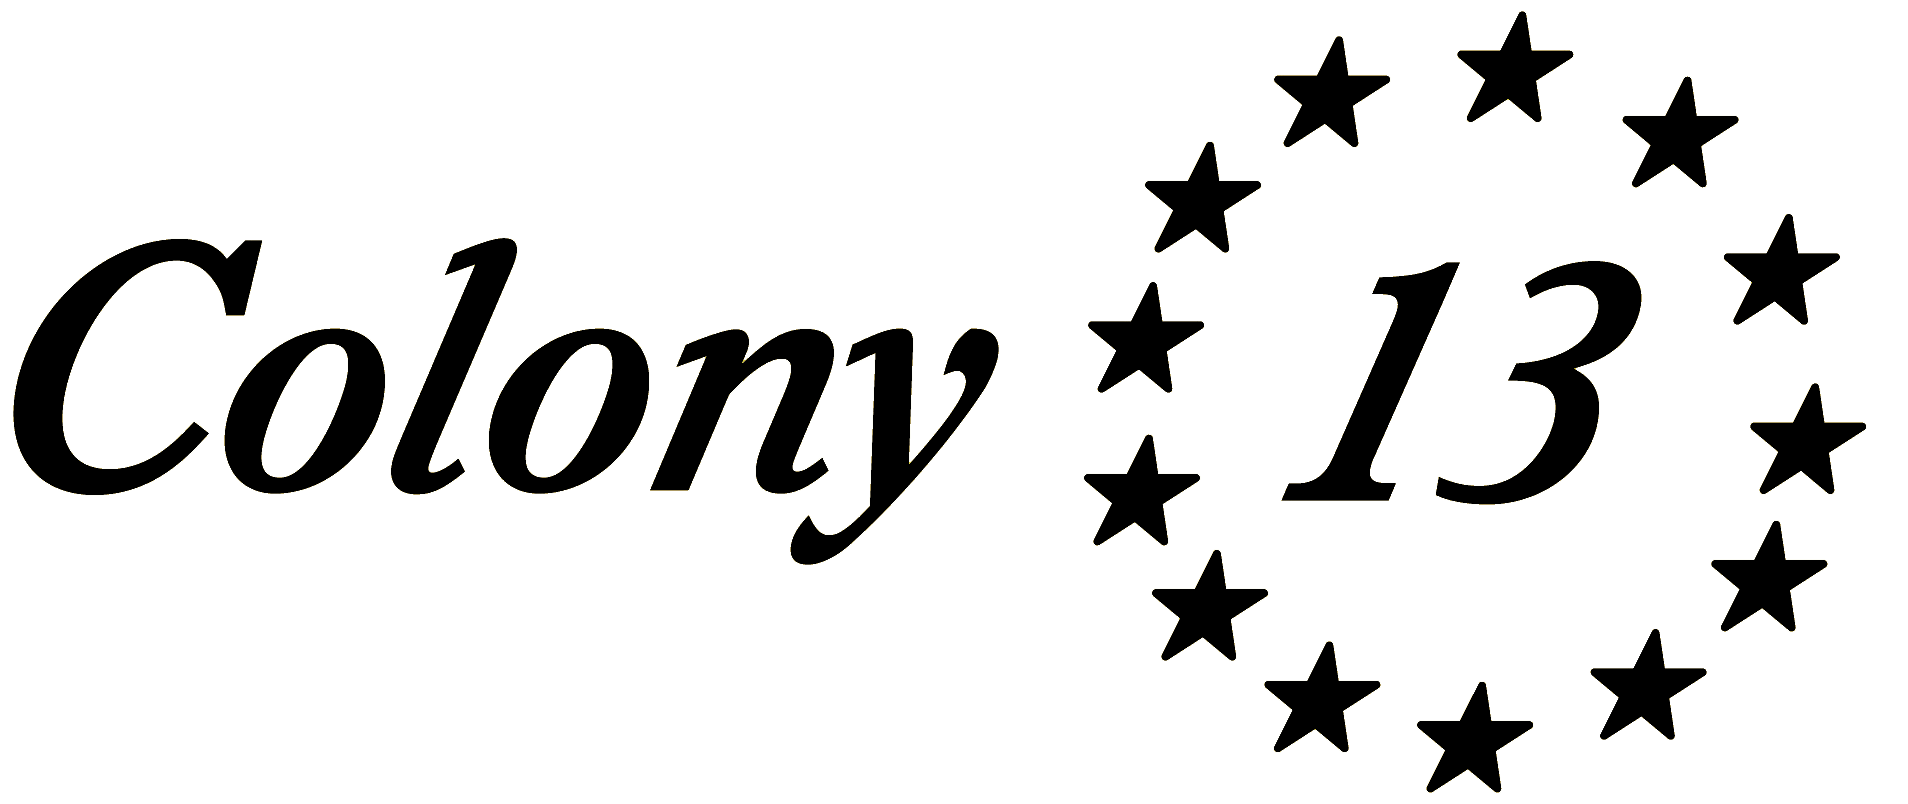 Colony 13 logo